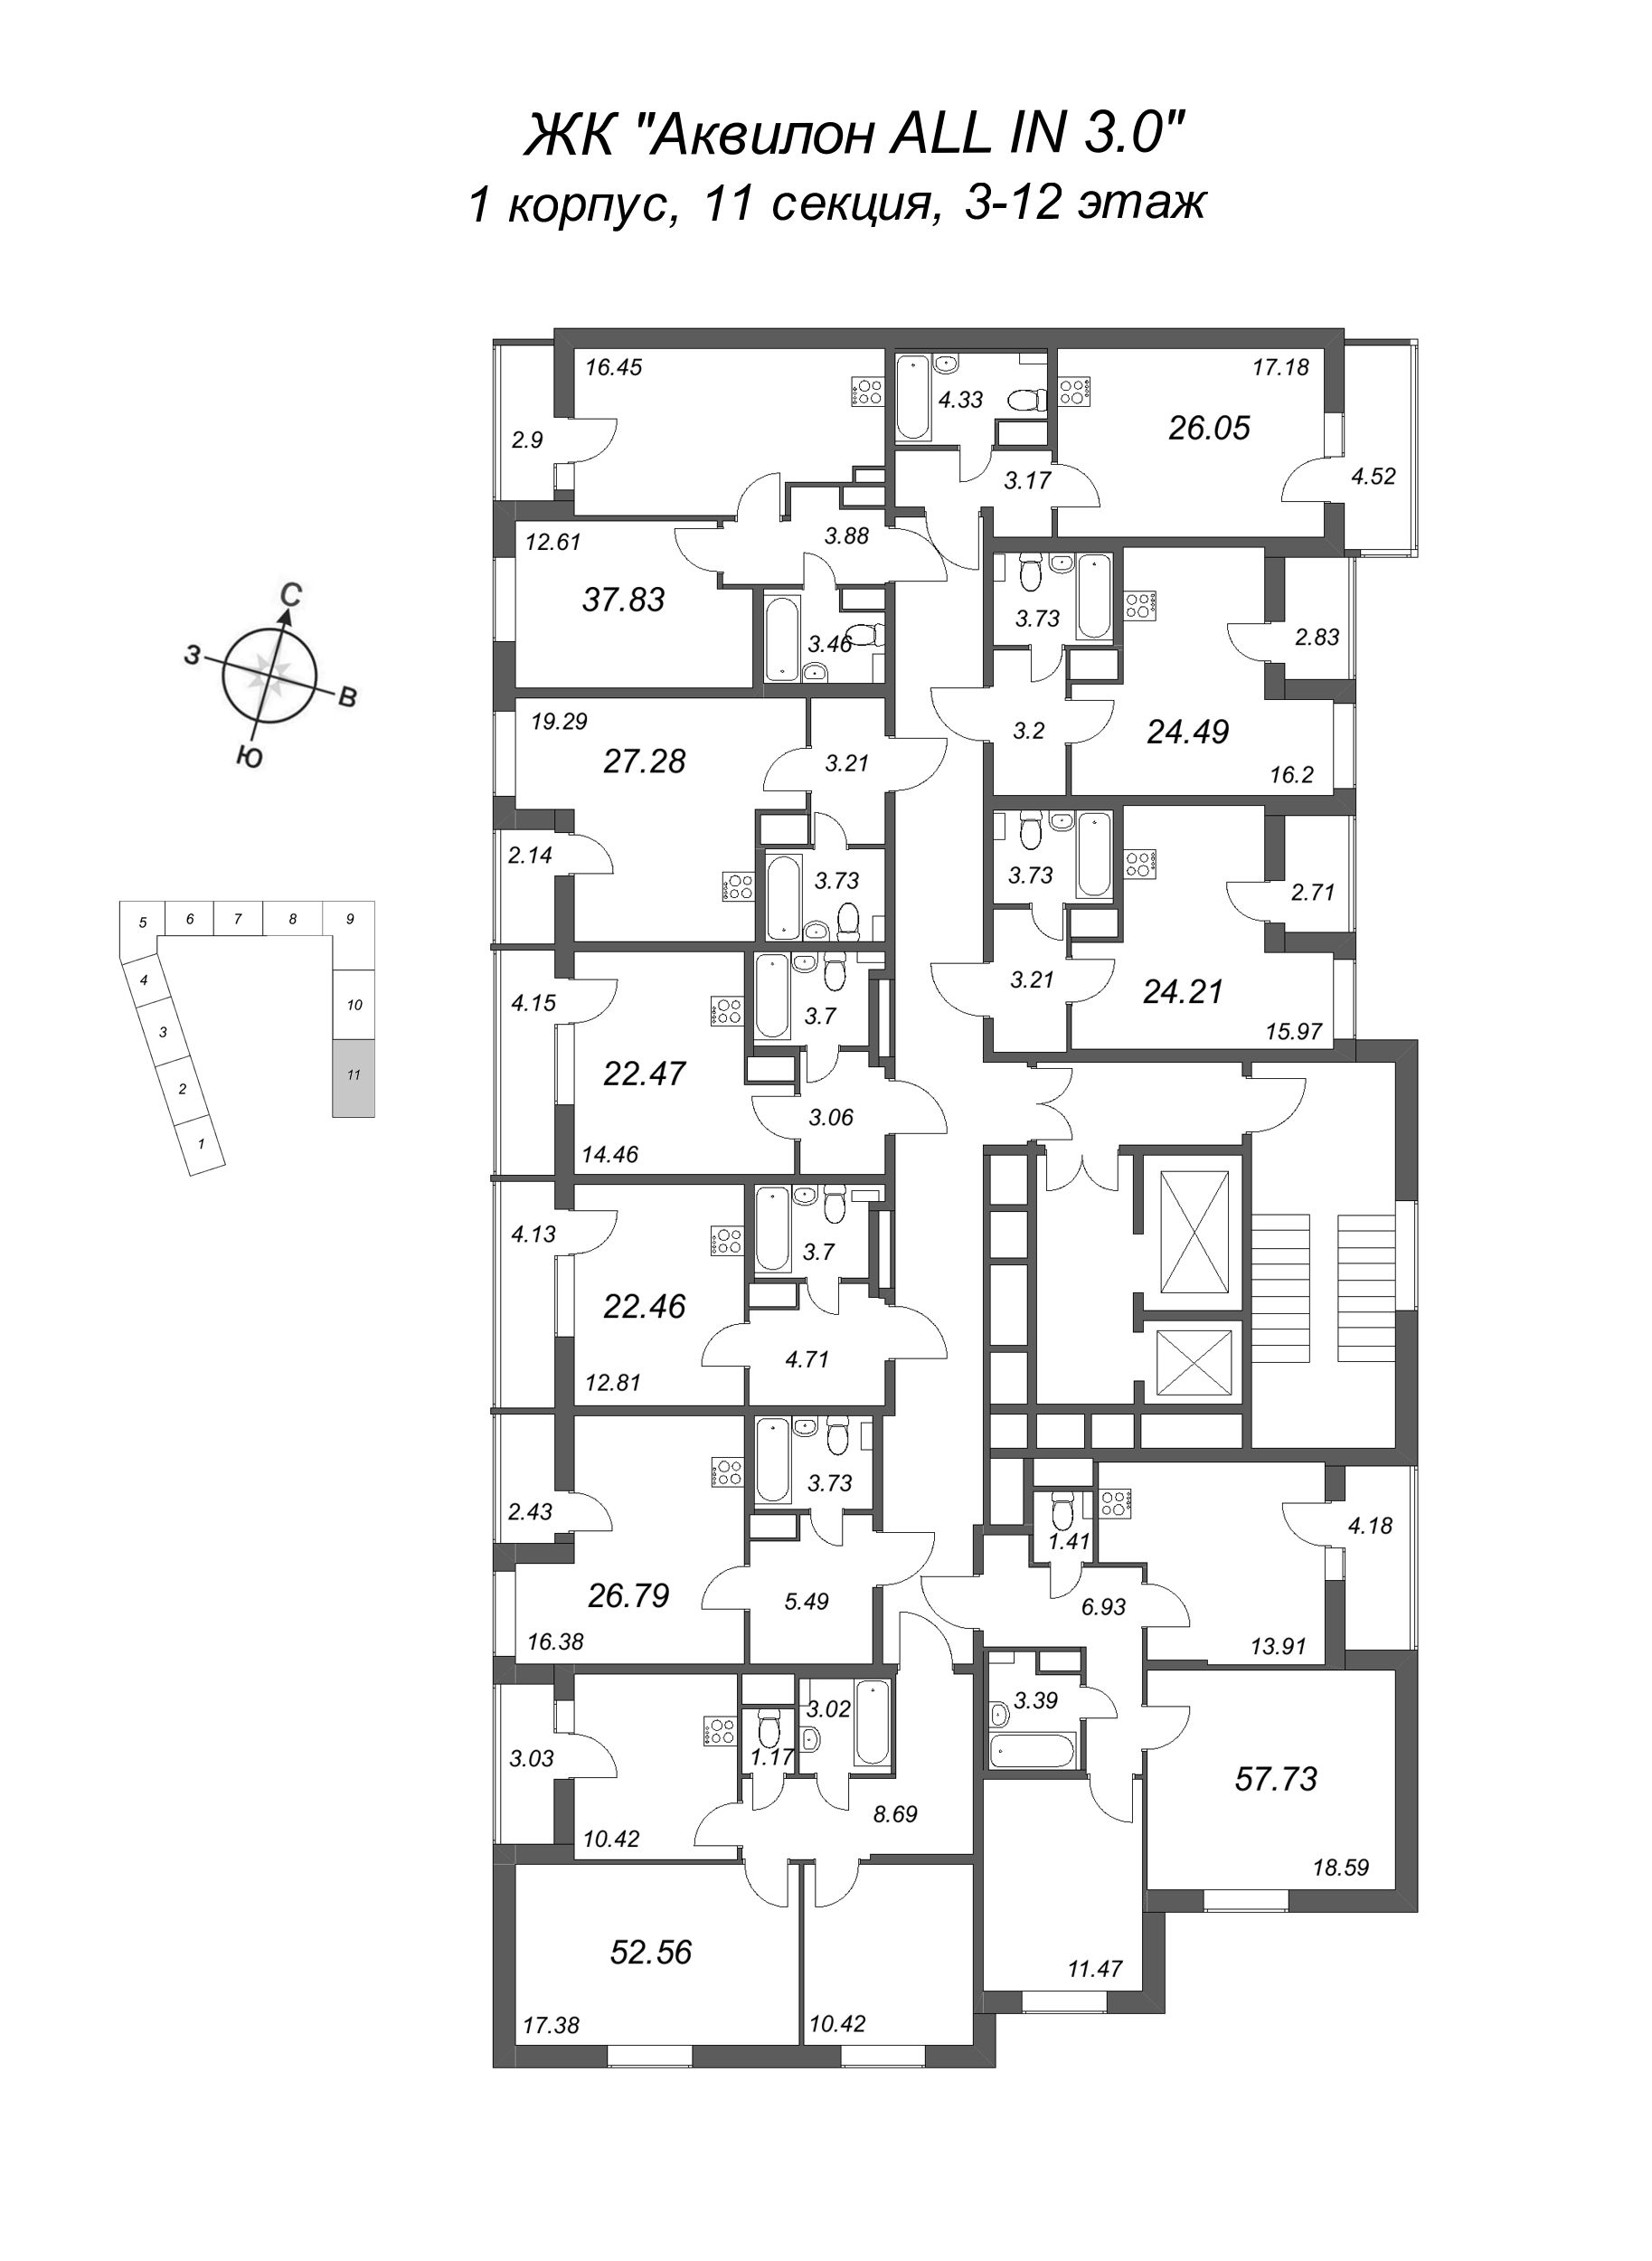 2-комнатная квартира, 52.56 м² в ЖК "Аквилон All in 3.0" - планировка этажа